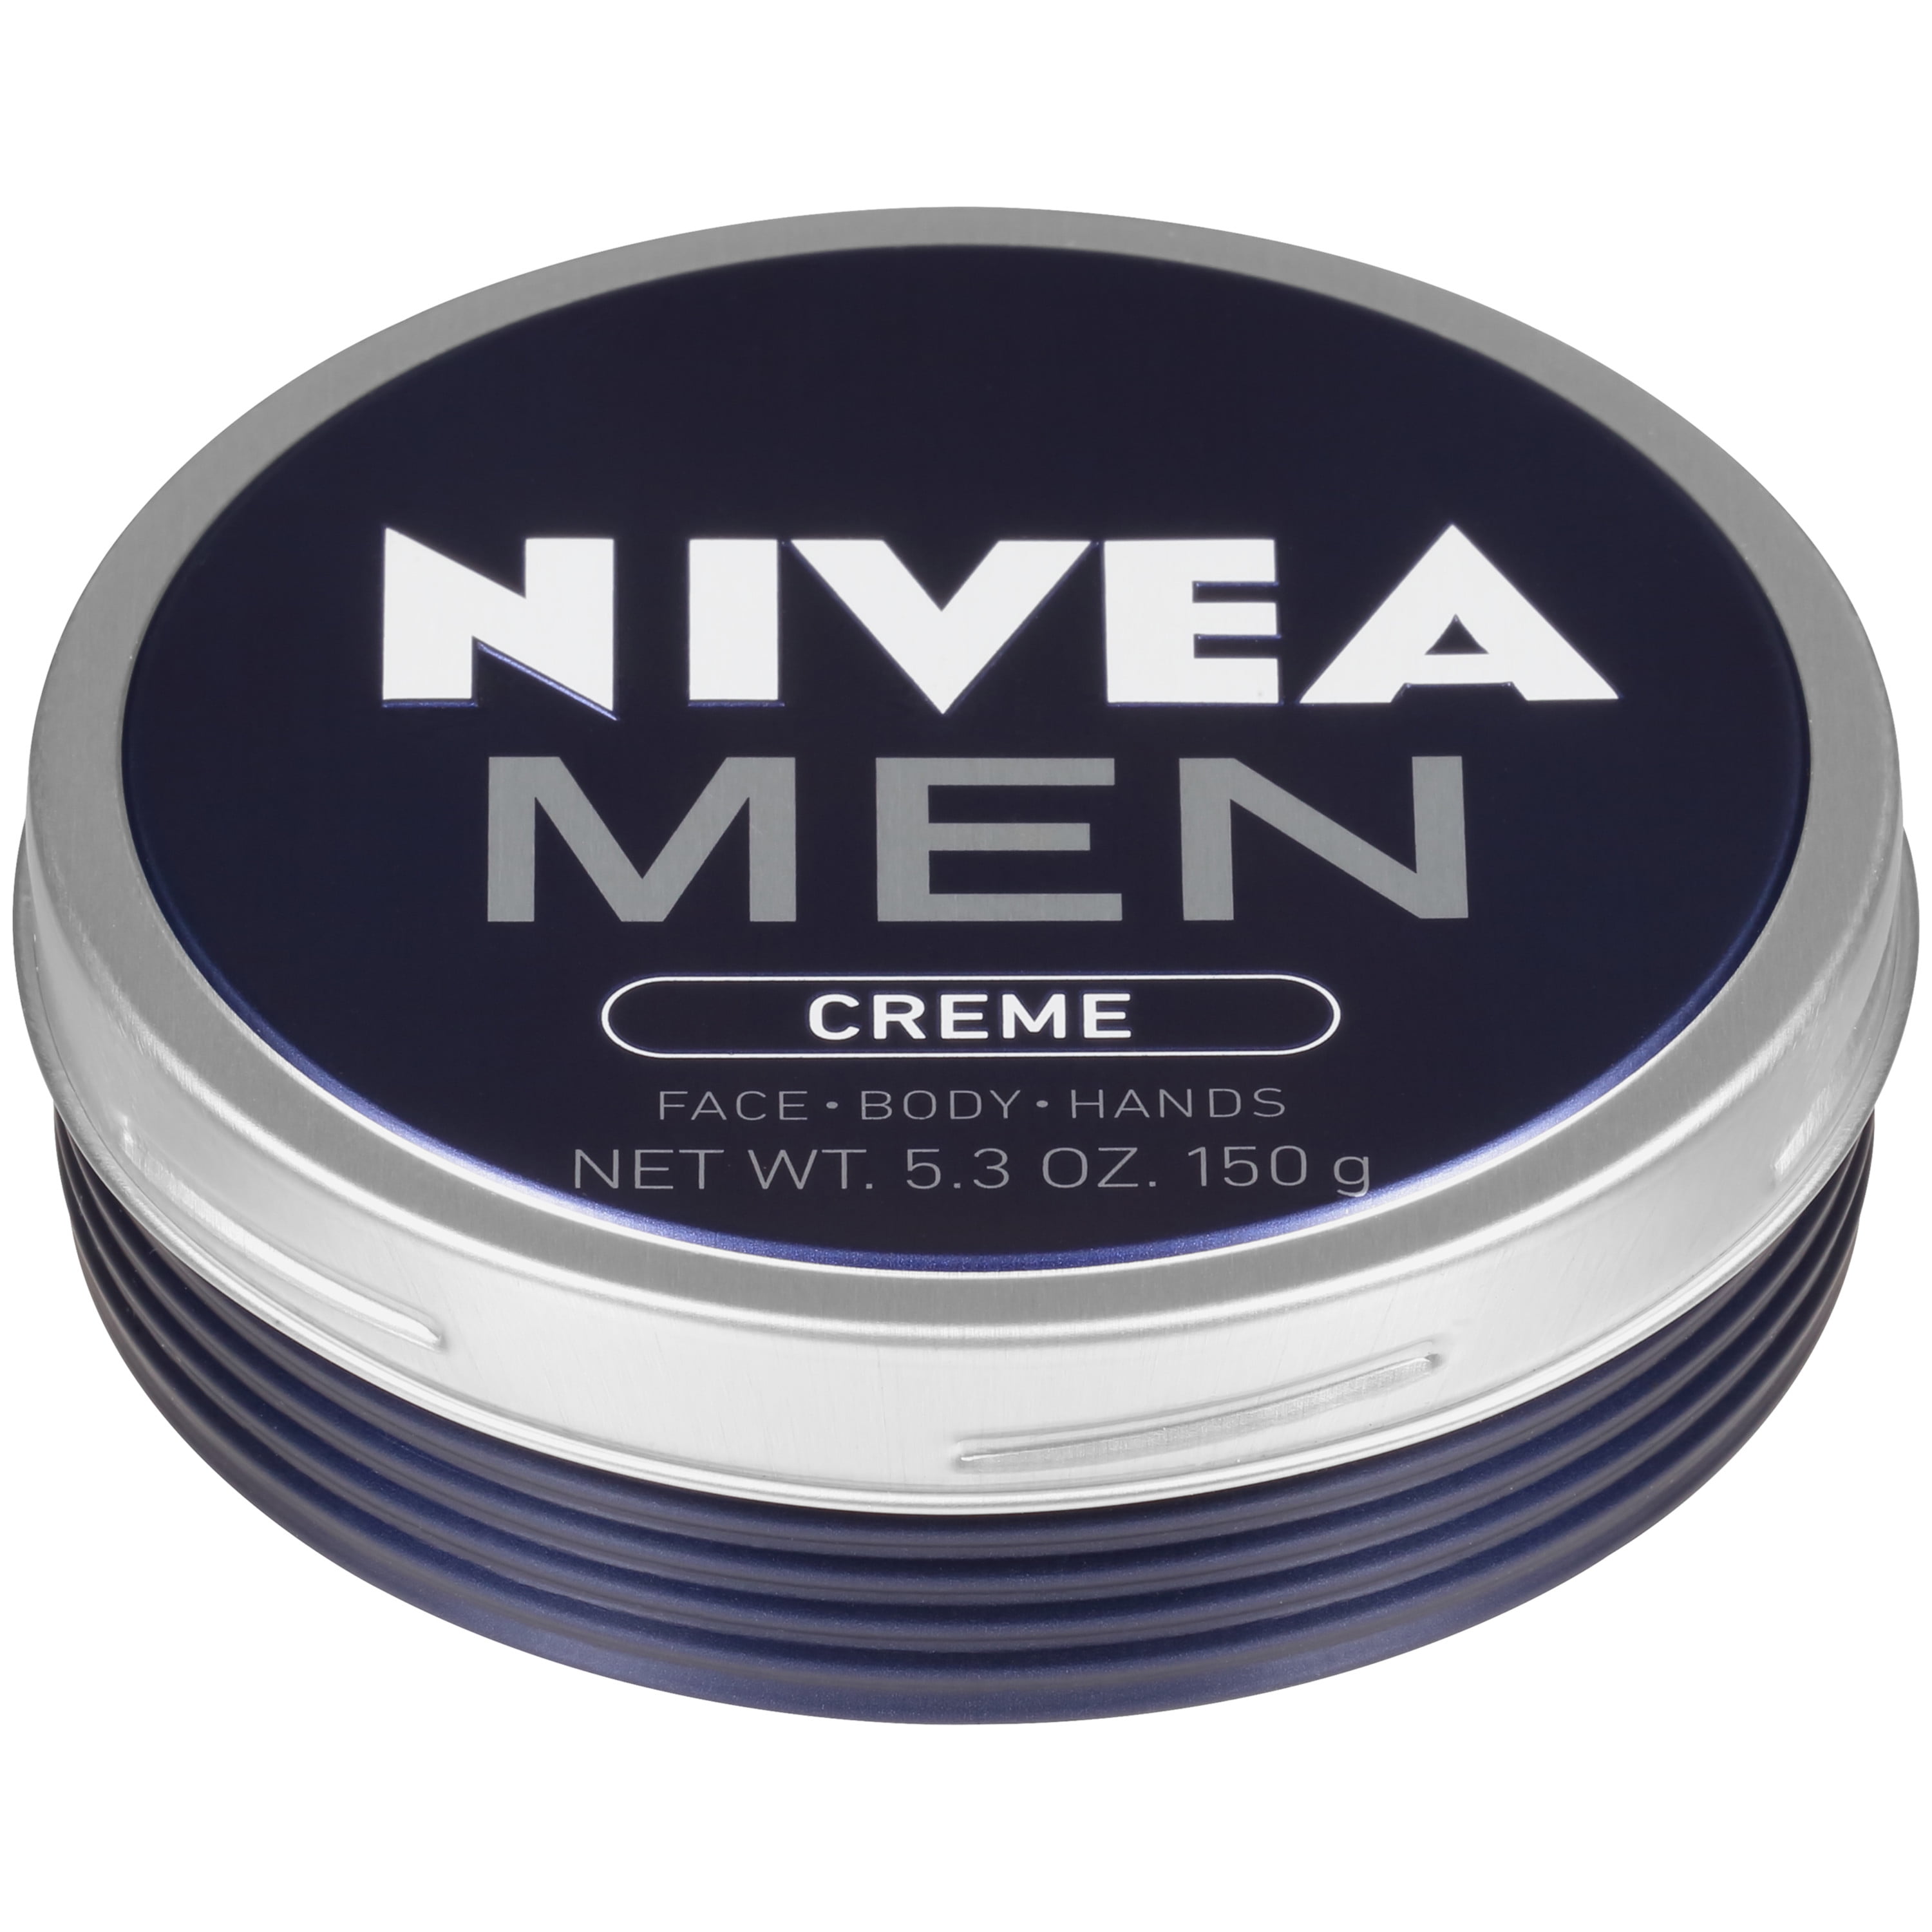 MEN Creme, Face Hand and Body Cream, 5.3 oz. - Walmart.com